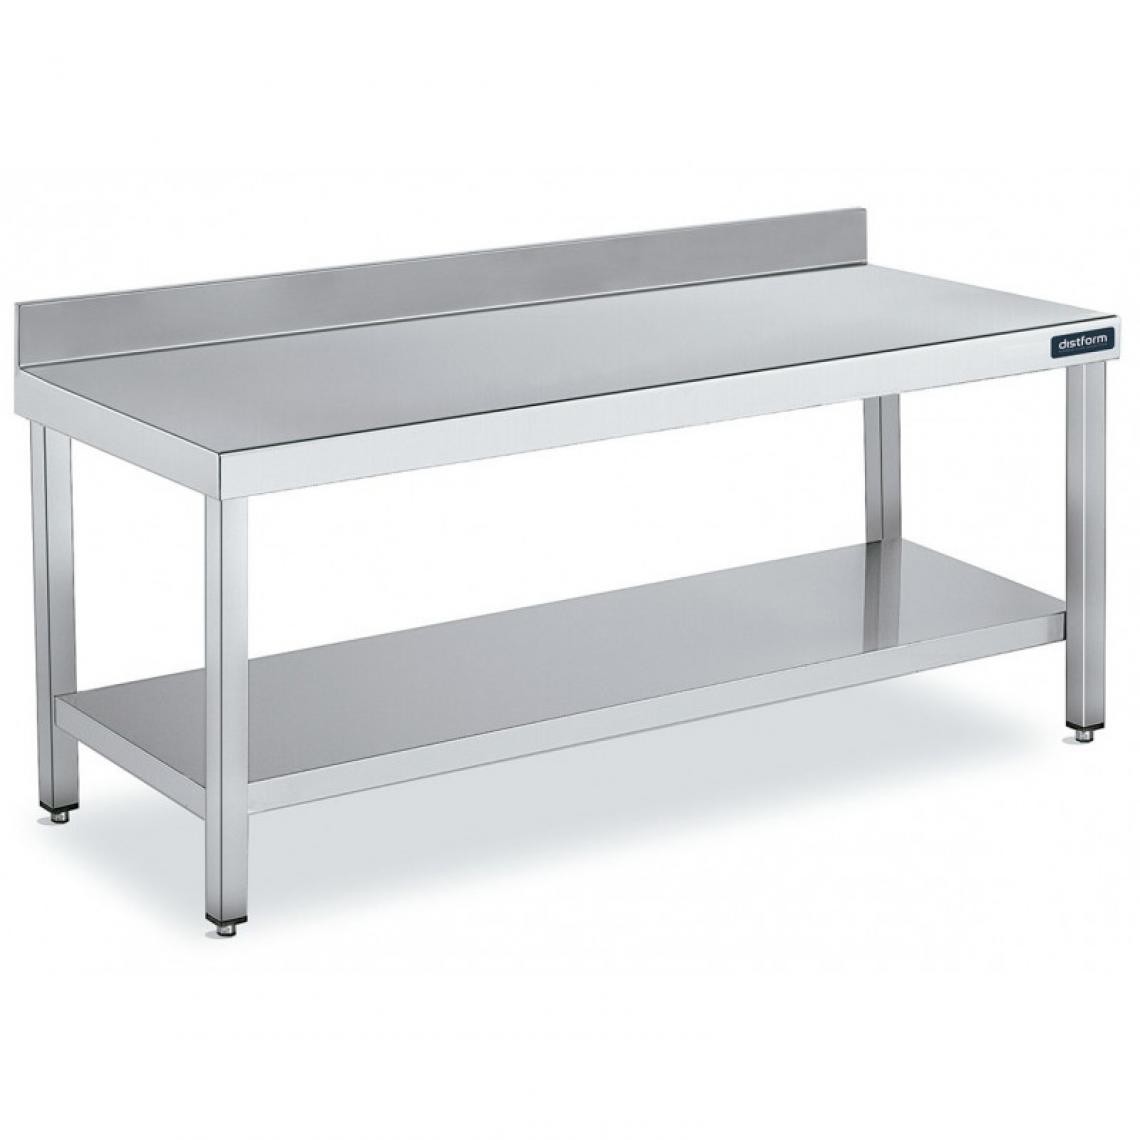 DISTFORM - Table Adossée en Inox avec 1 étagère Profondeur 700 mm - Distform - Acier inoxydable1300x700 - Tables à manger